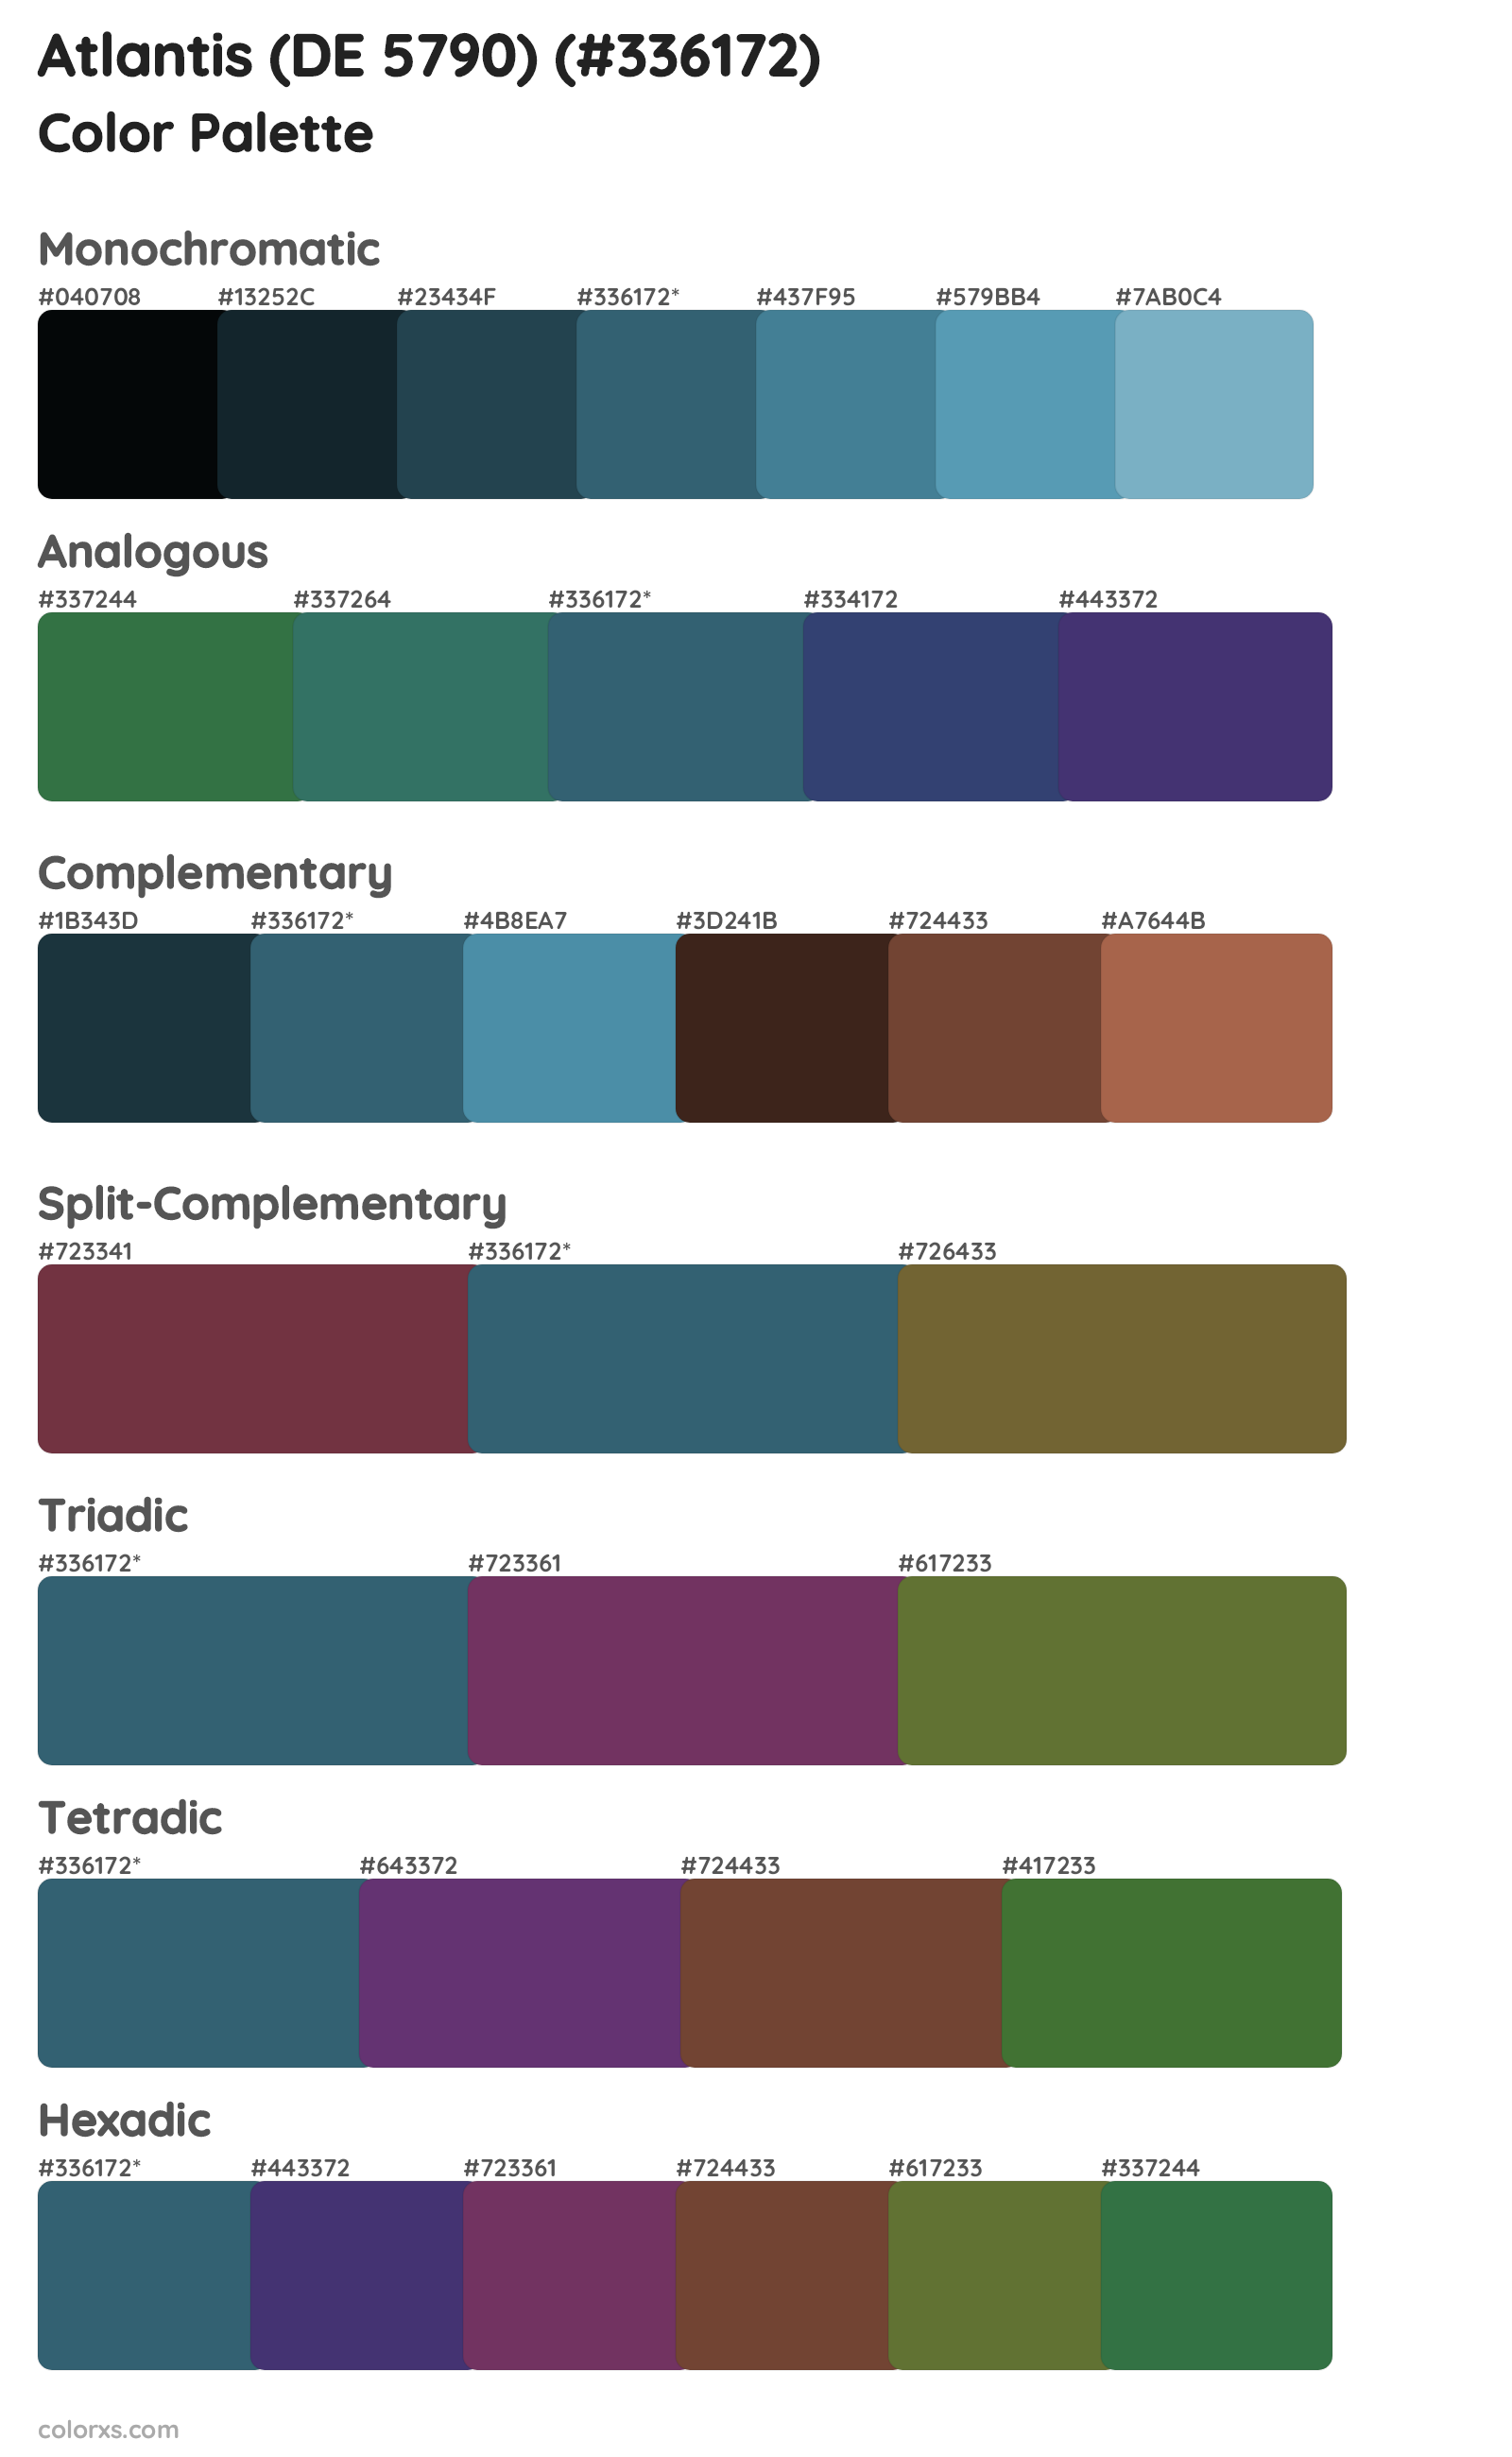 Atlantis (DE 5790) Color Scheme Palettes